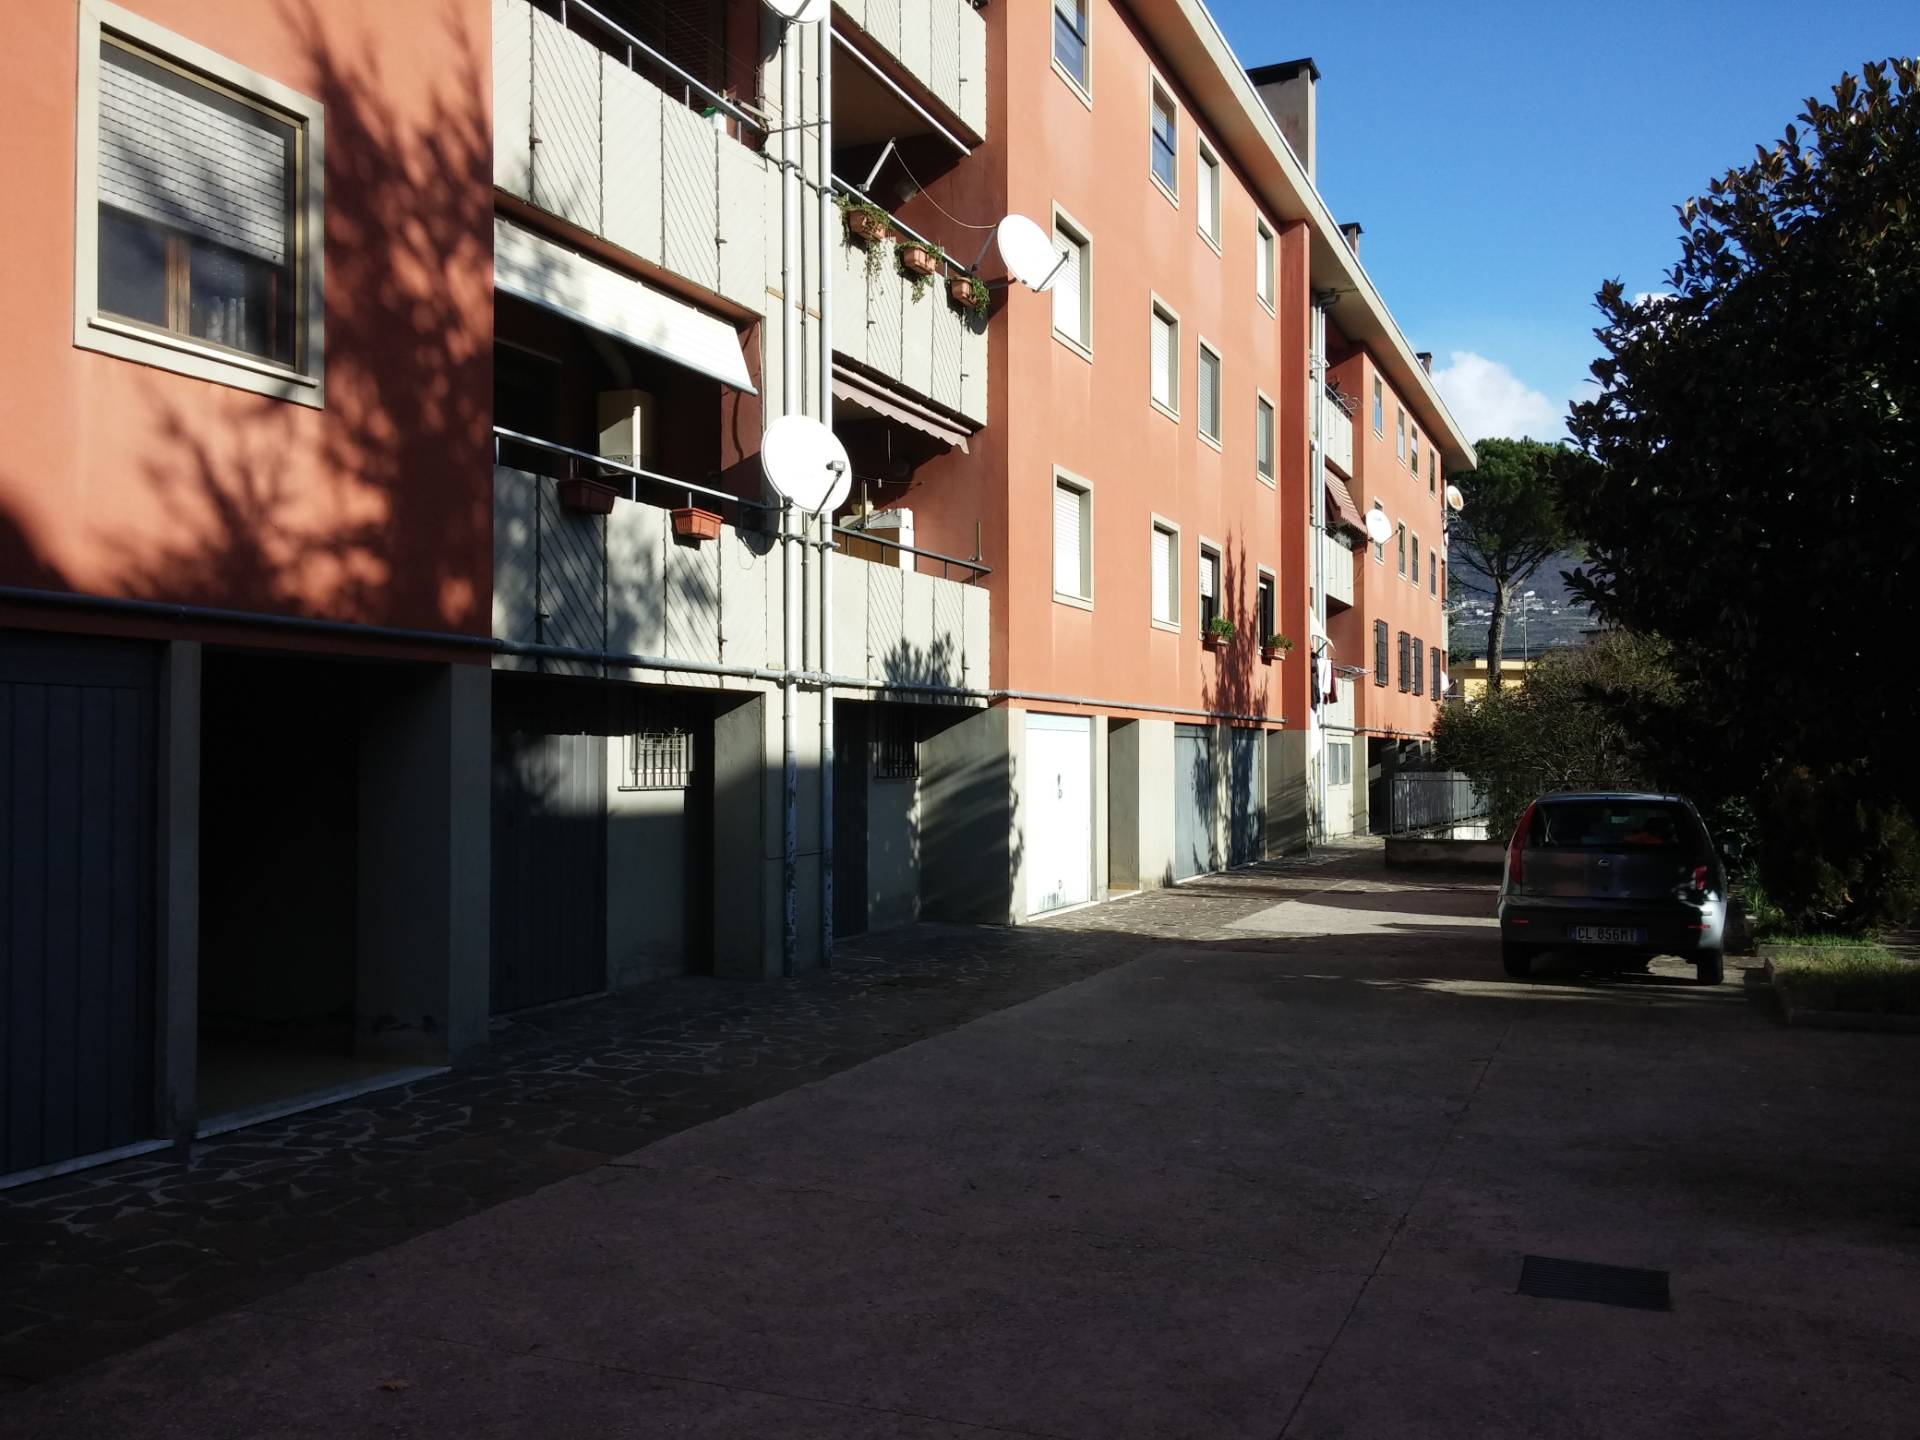 Appartamento in vendita a Sora, 5 locali, prezzo € 100.000 | PortaleAgenzieImmobiliari.it